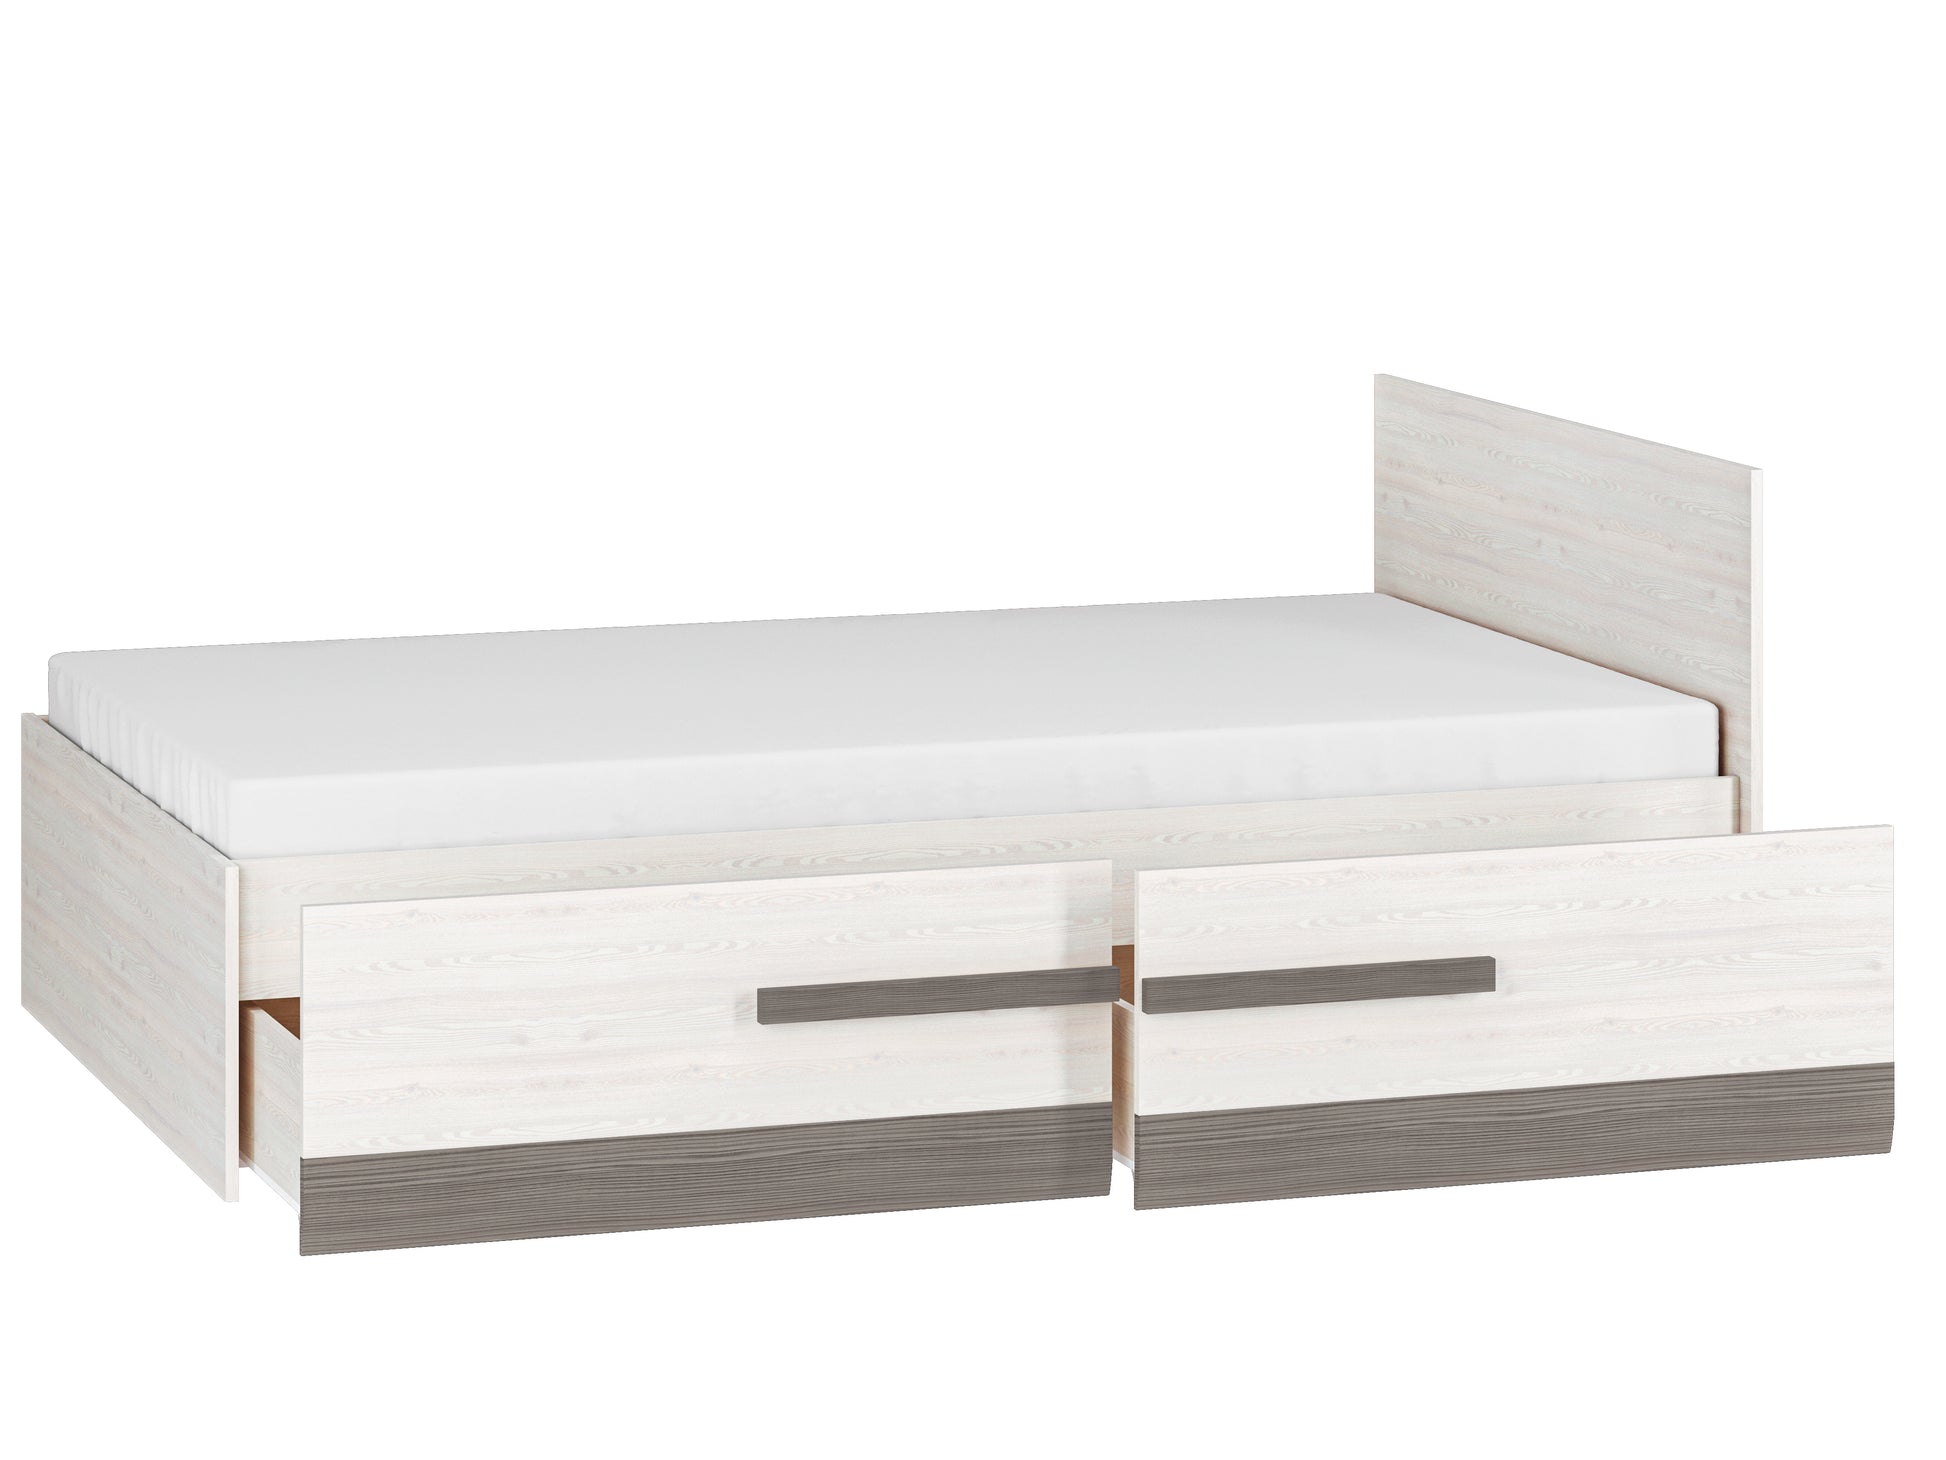 Łóżko Blanka jest przystosowane pod materac o wielkości 120x200 cm oraz posiada dwie wysuwane szuflady. 